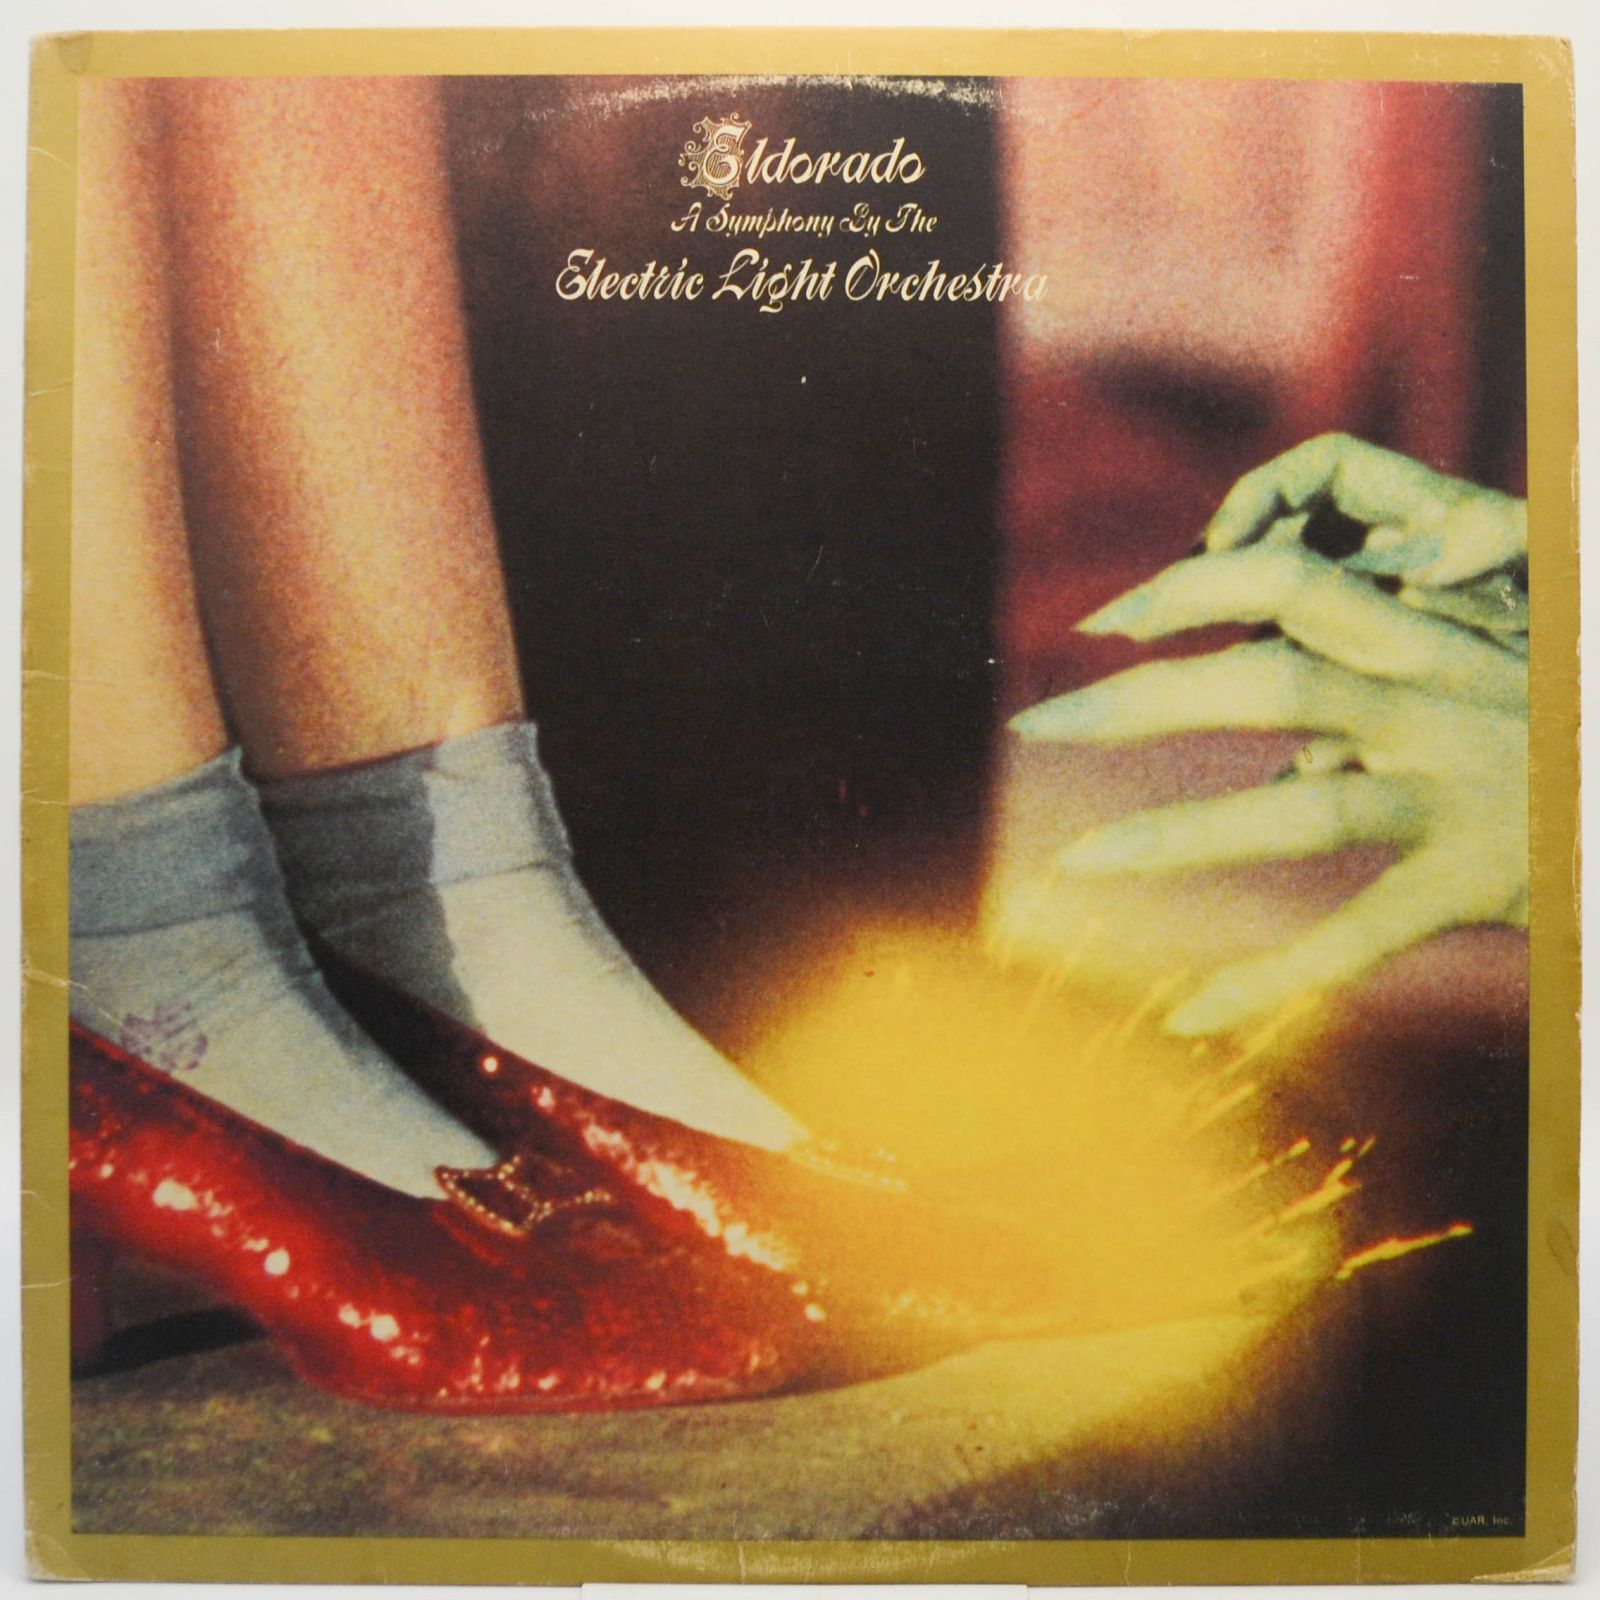 Electric Light Orchestra — Eldorado - A Symphony By The Electric Light Orchestra (USA), 1974